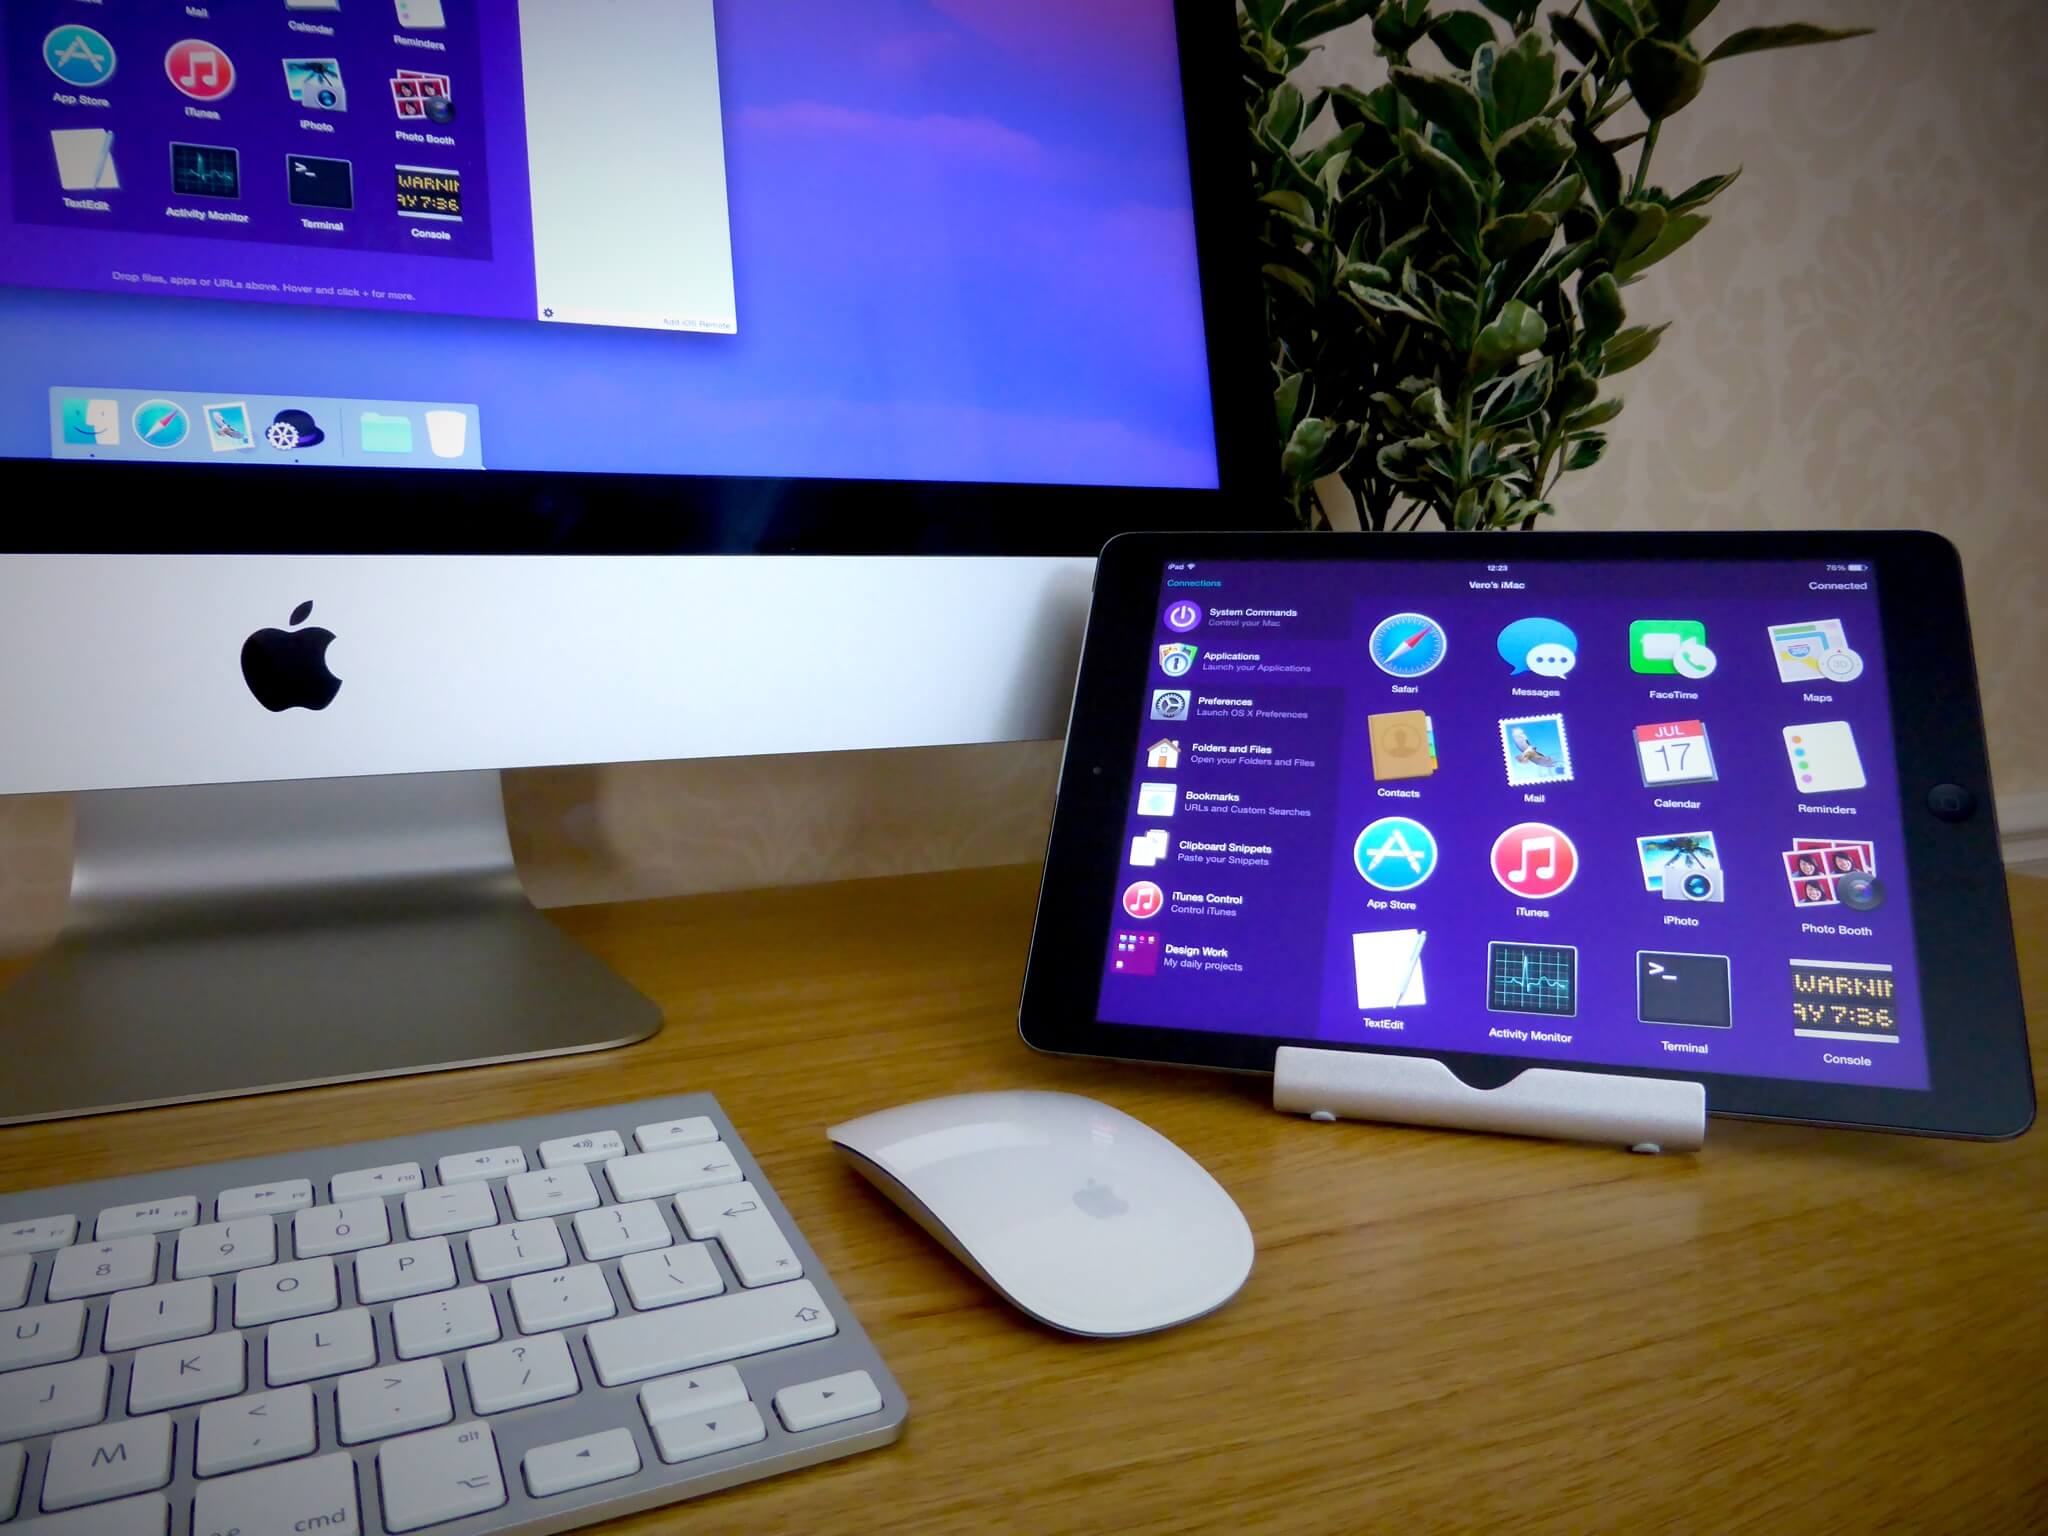 iPad on desk